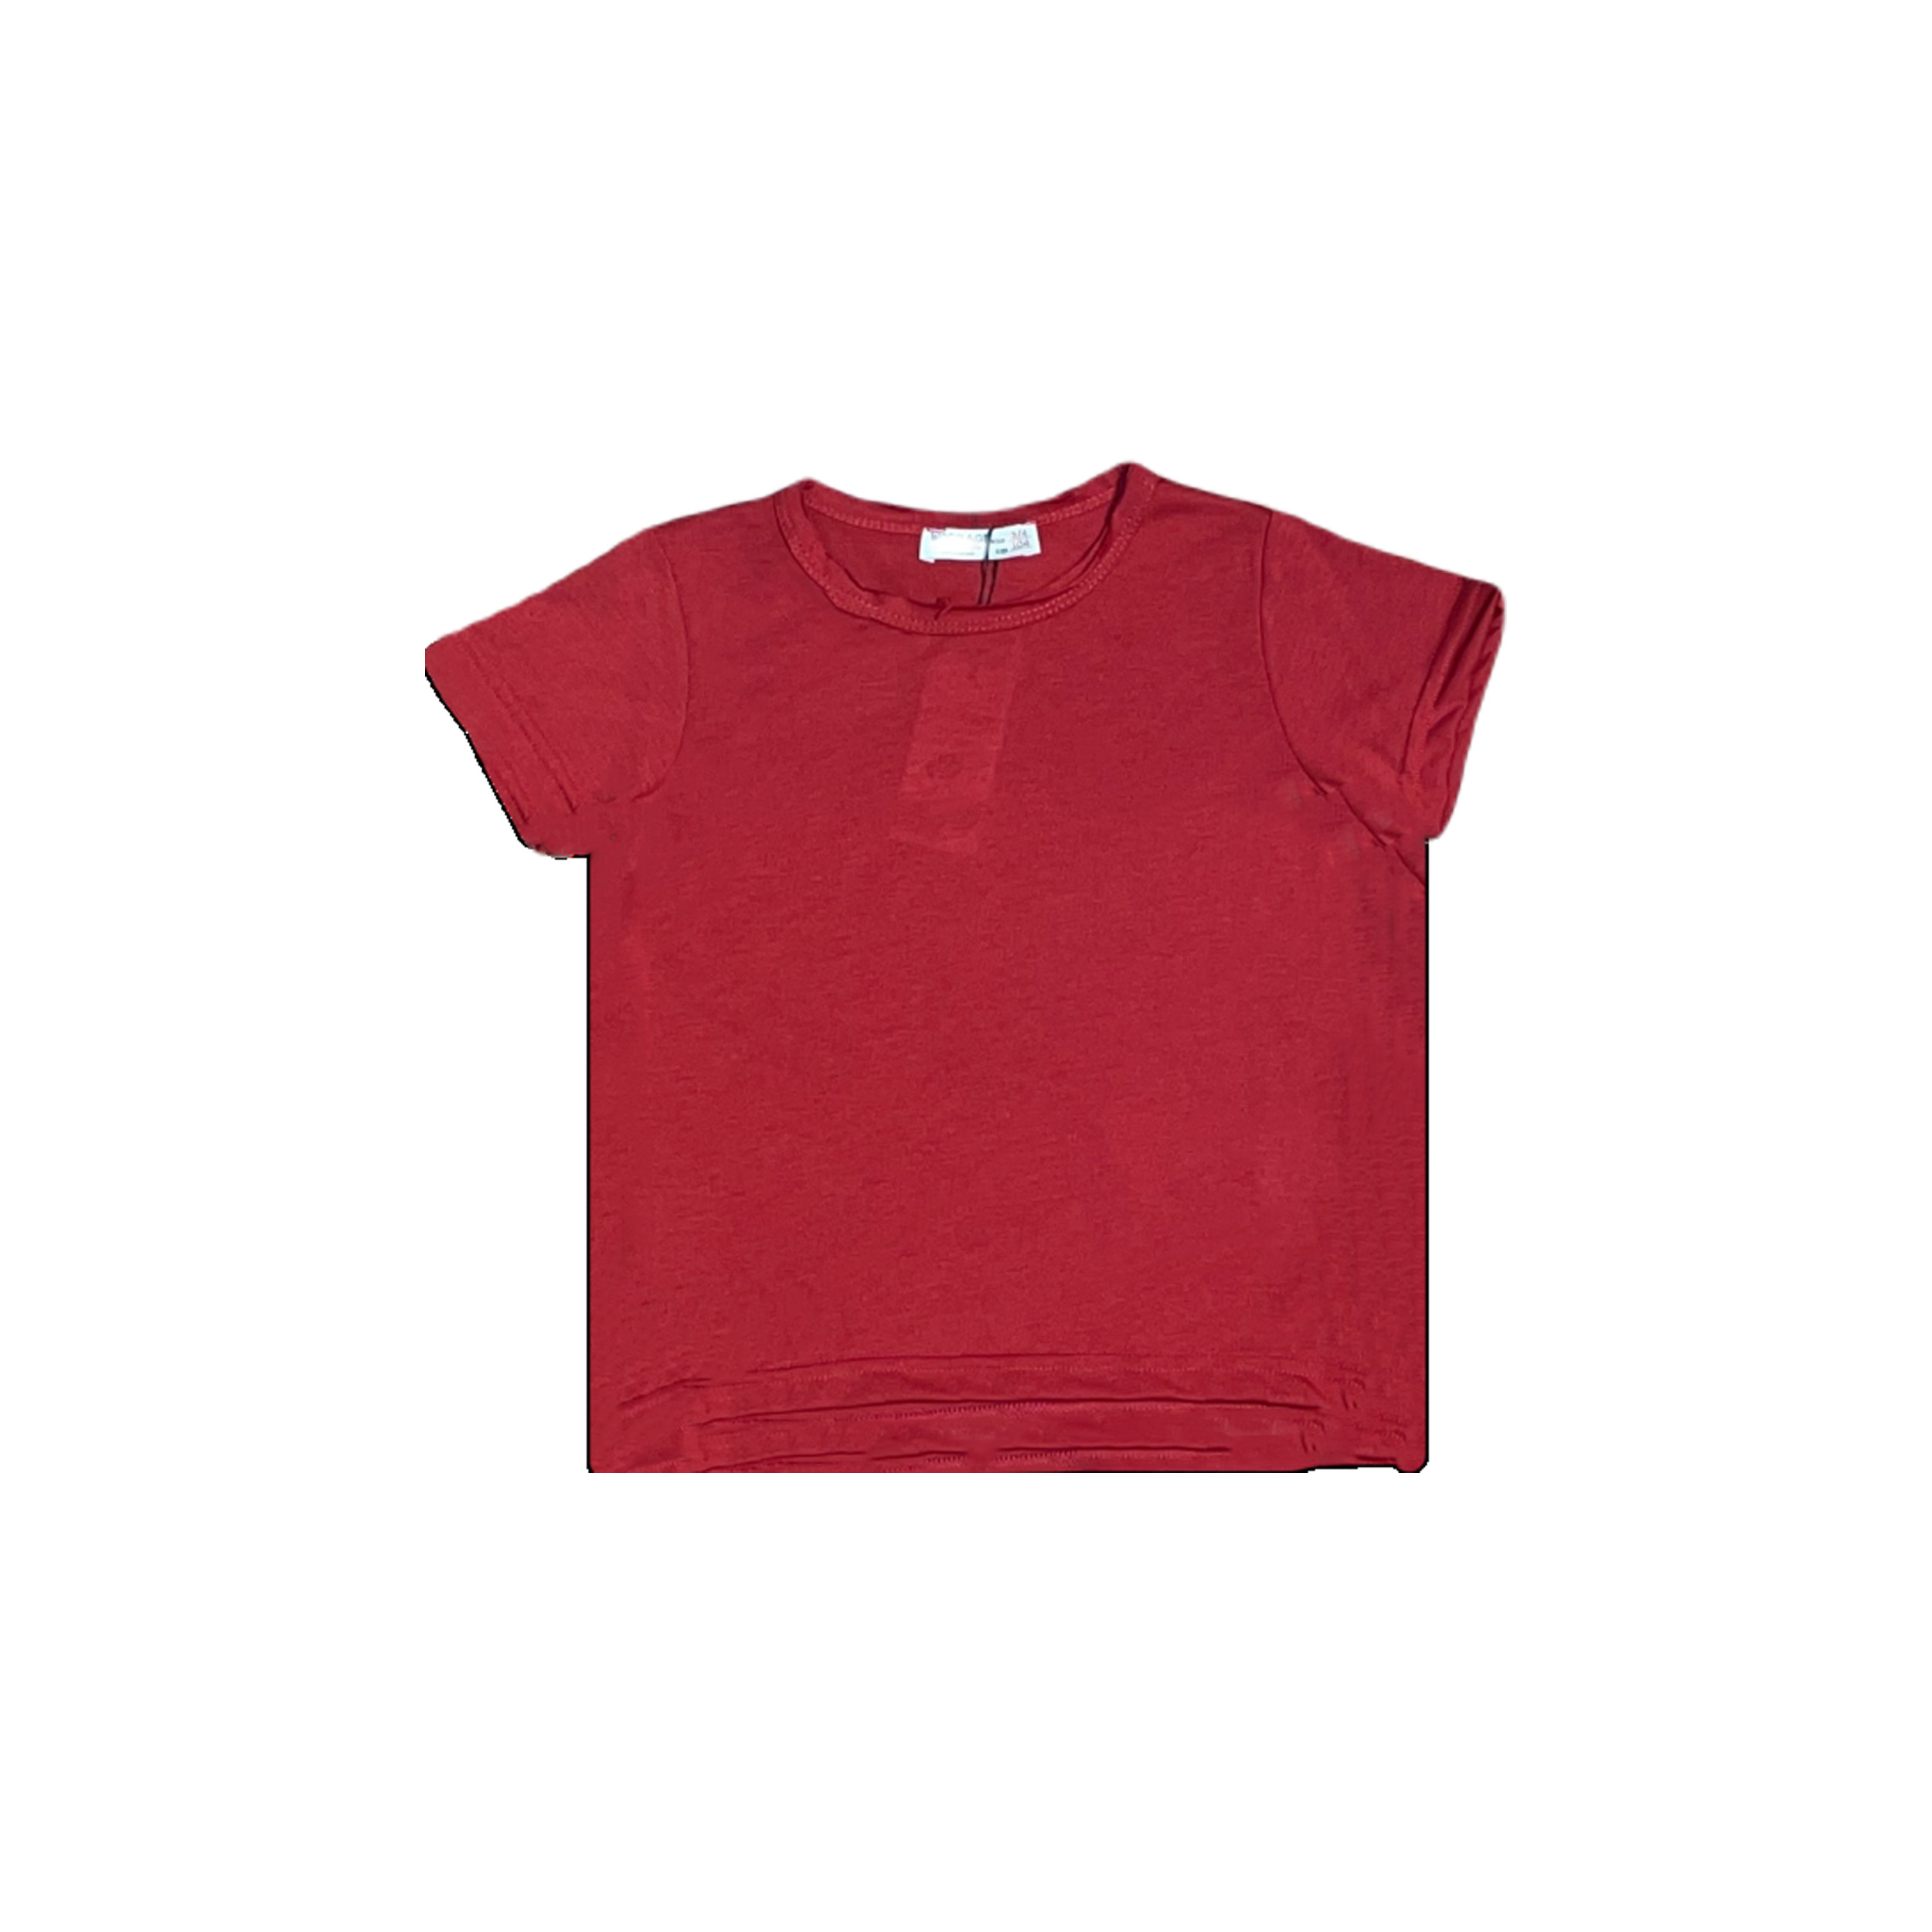 تی شرت پسرانه کد 29100 رنگ قرمز